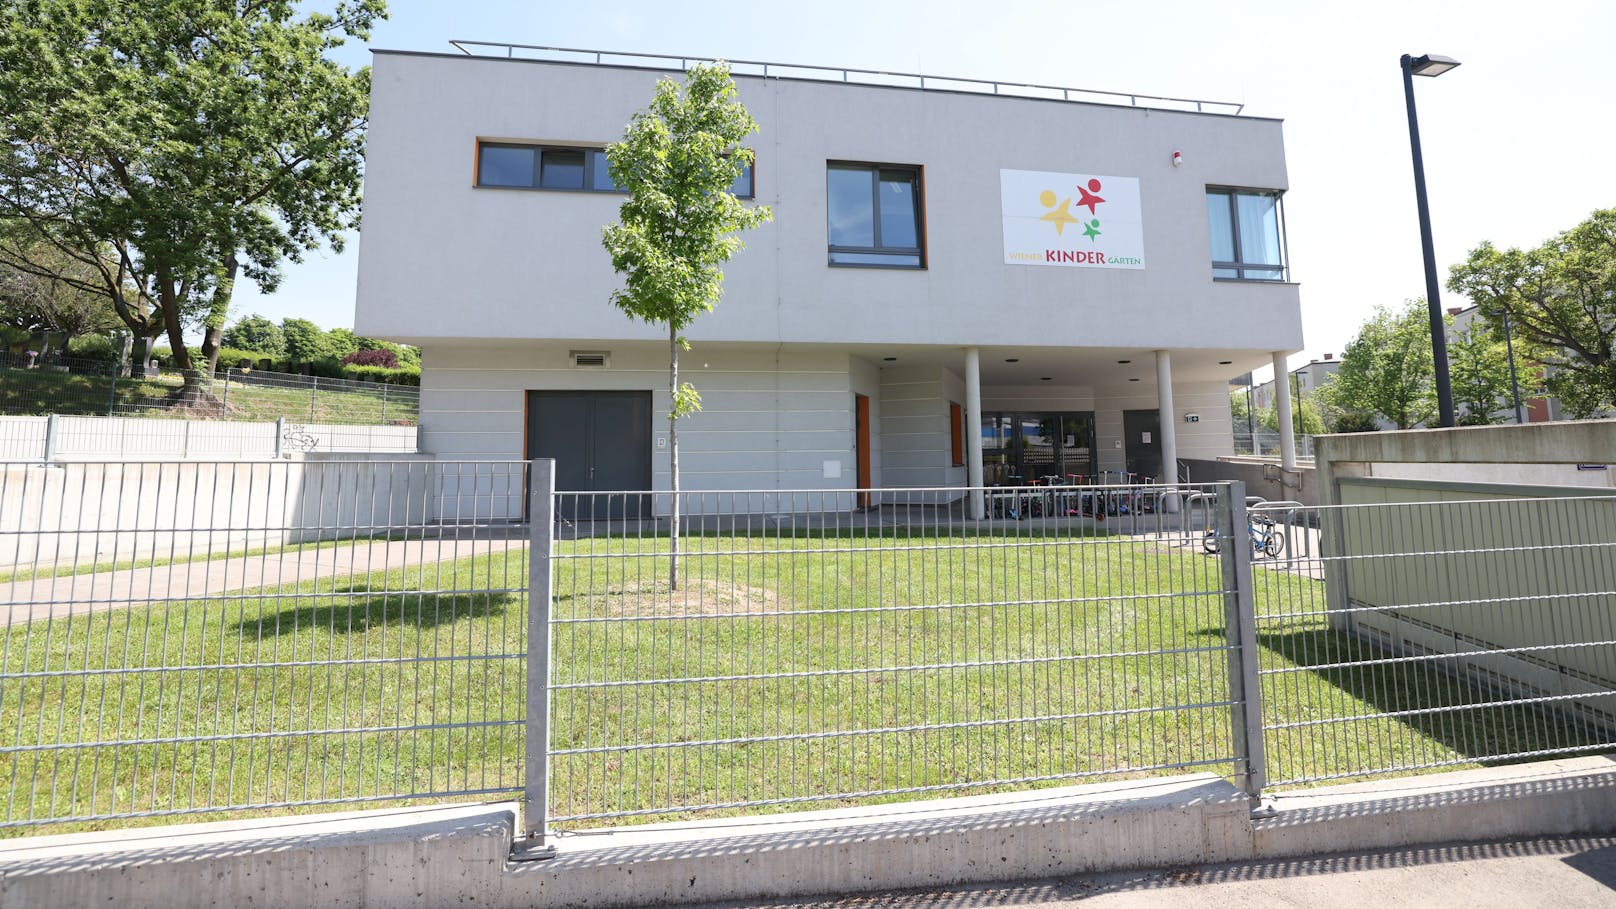 Der betroffene Kindergarten in Wien-Penzing erhält jetzt eine neue Leitung.